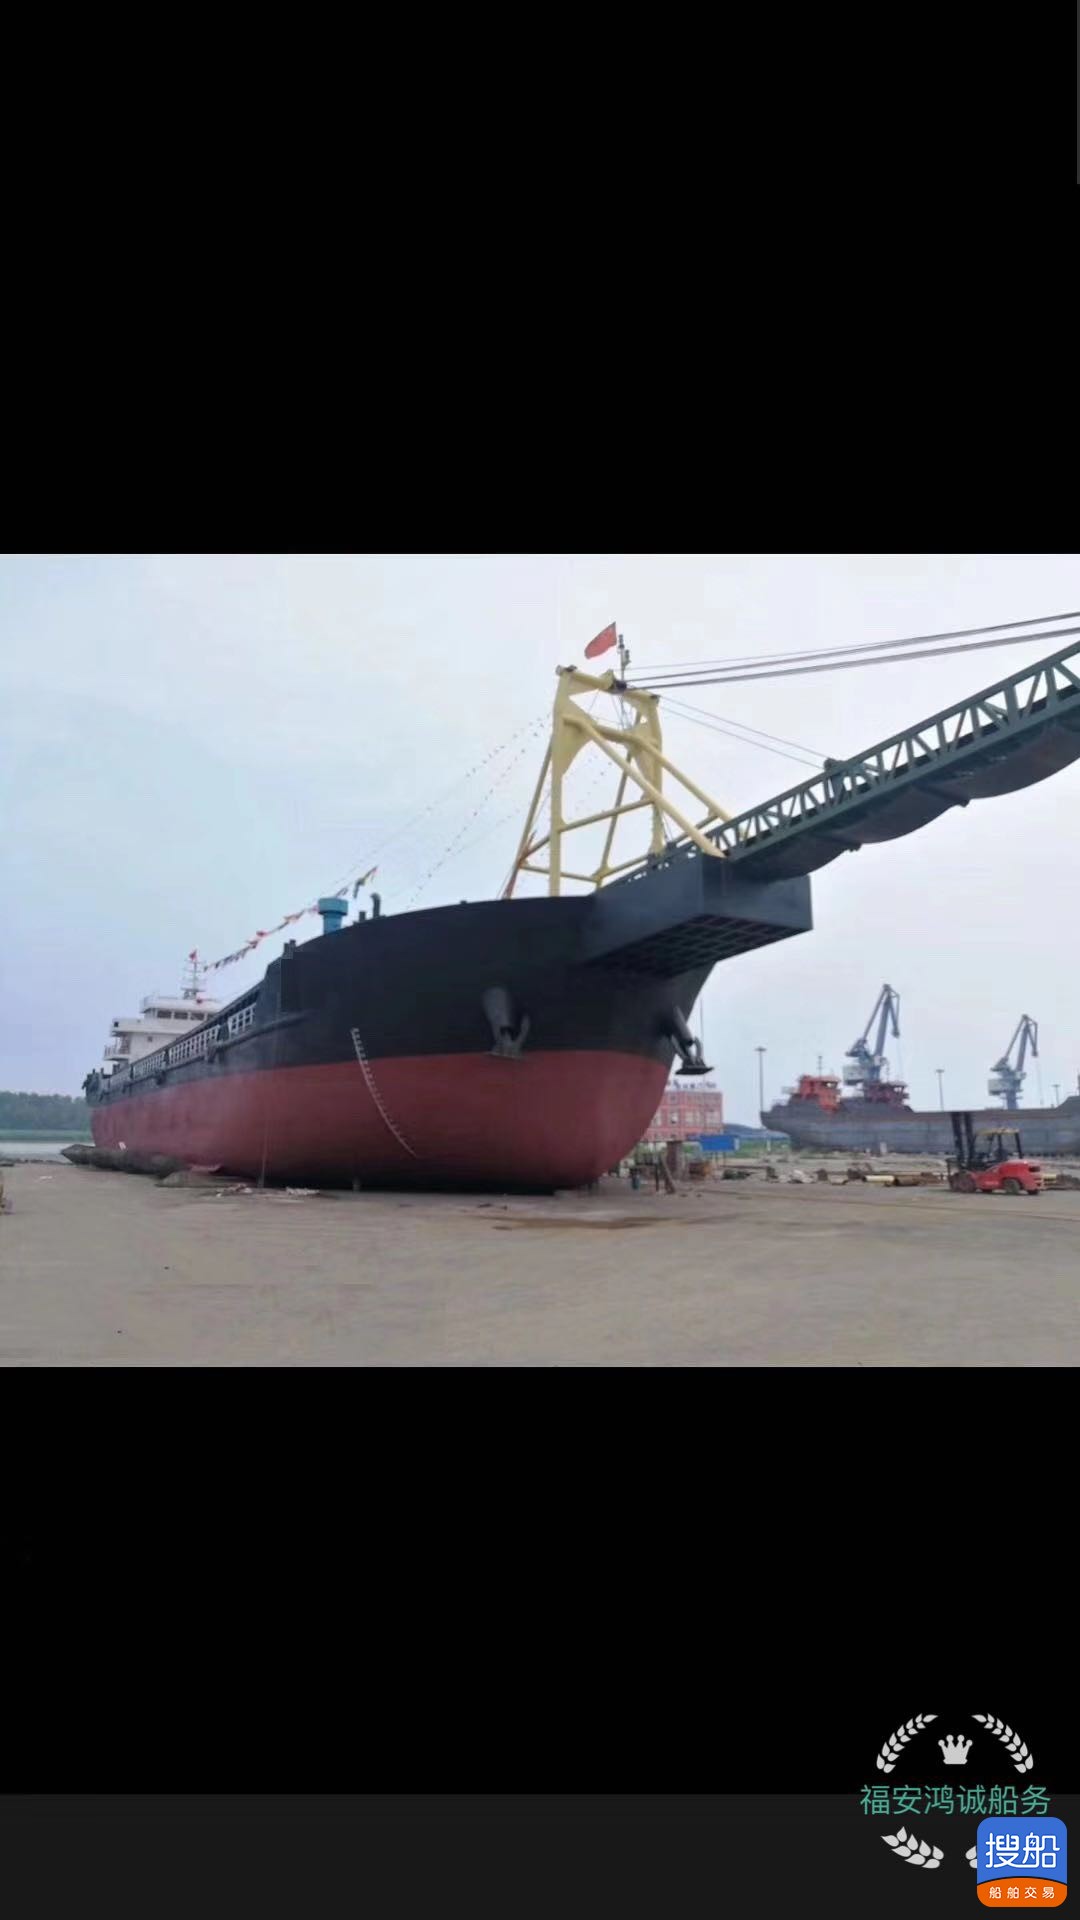 船东拜托出卖新制作4200吨自卸皮带砂船 真拆货量5000吨 祸...-2.jpg